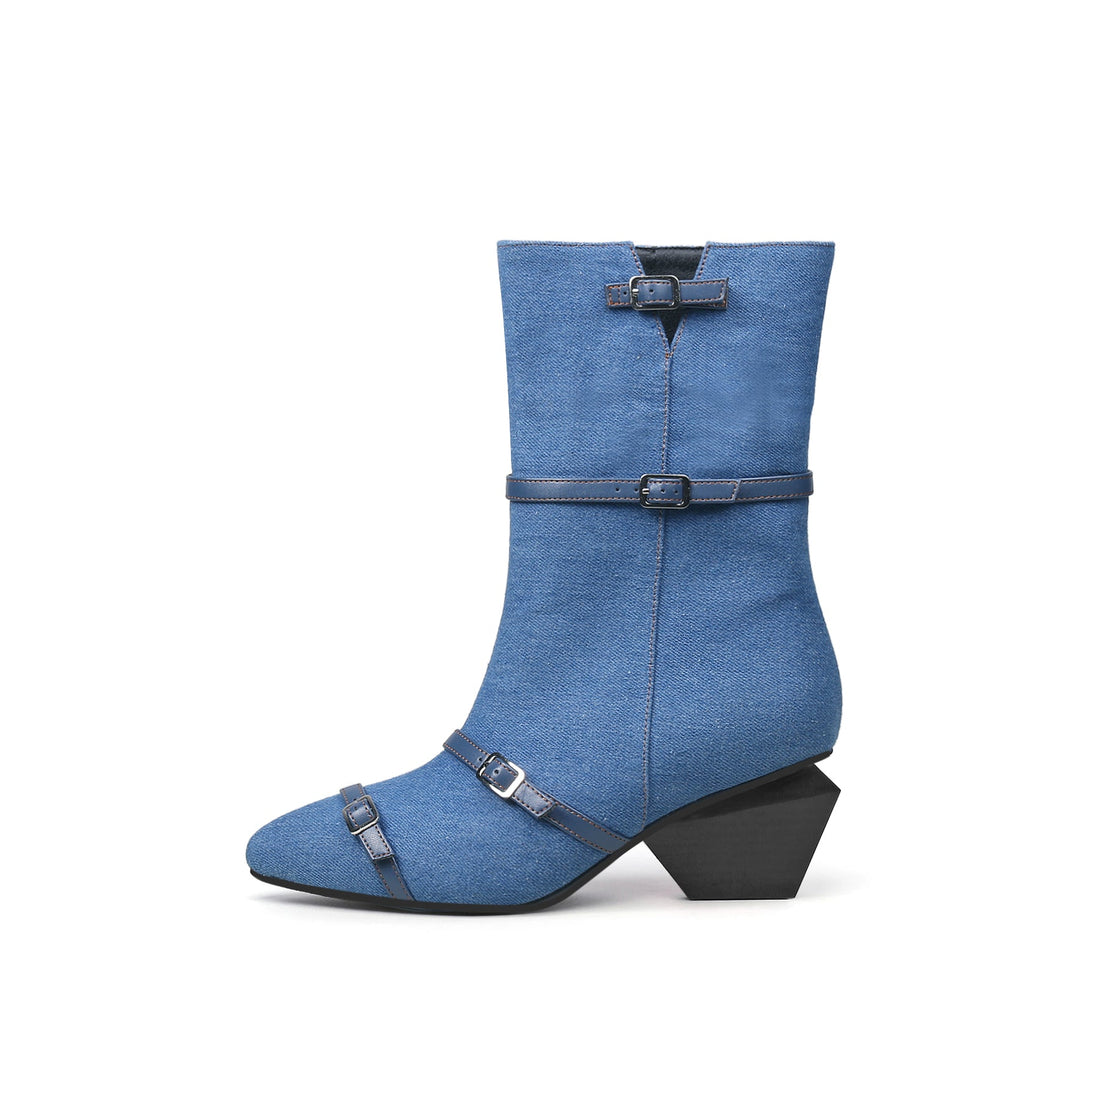 Cross Buckle Straps Denim Blue Ankle Boots - 0cm